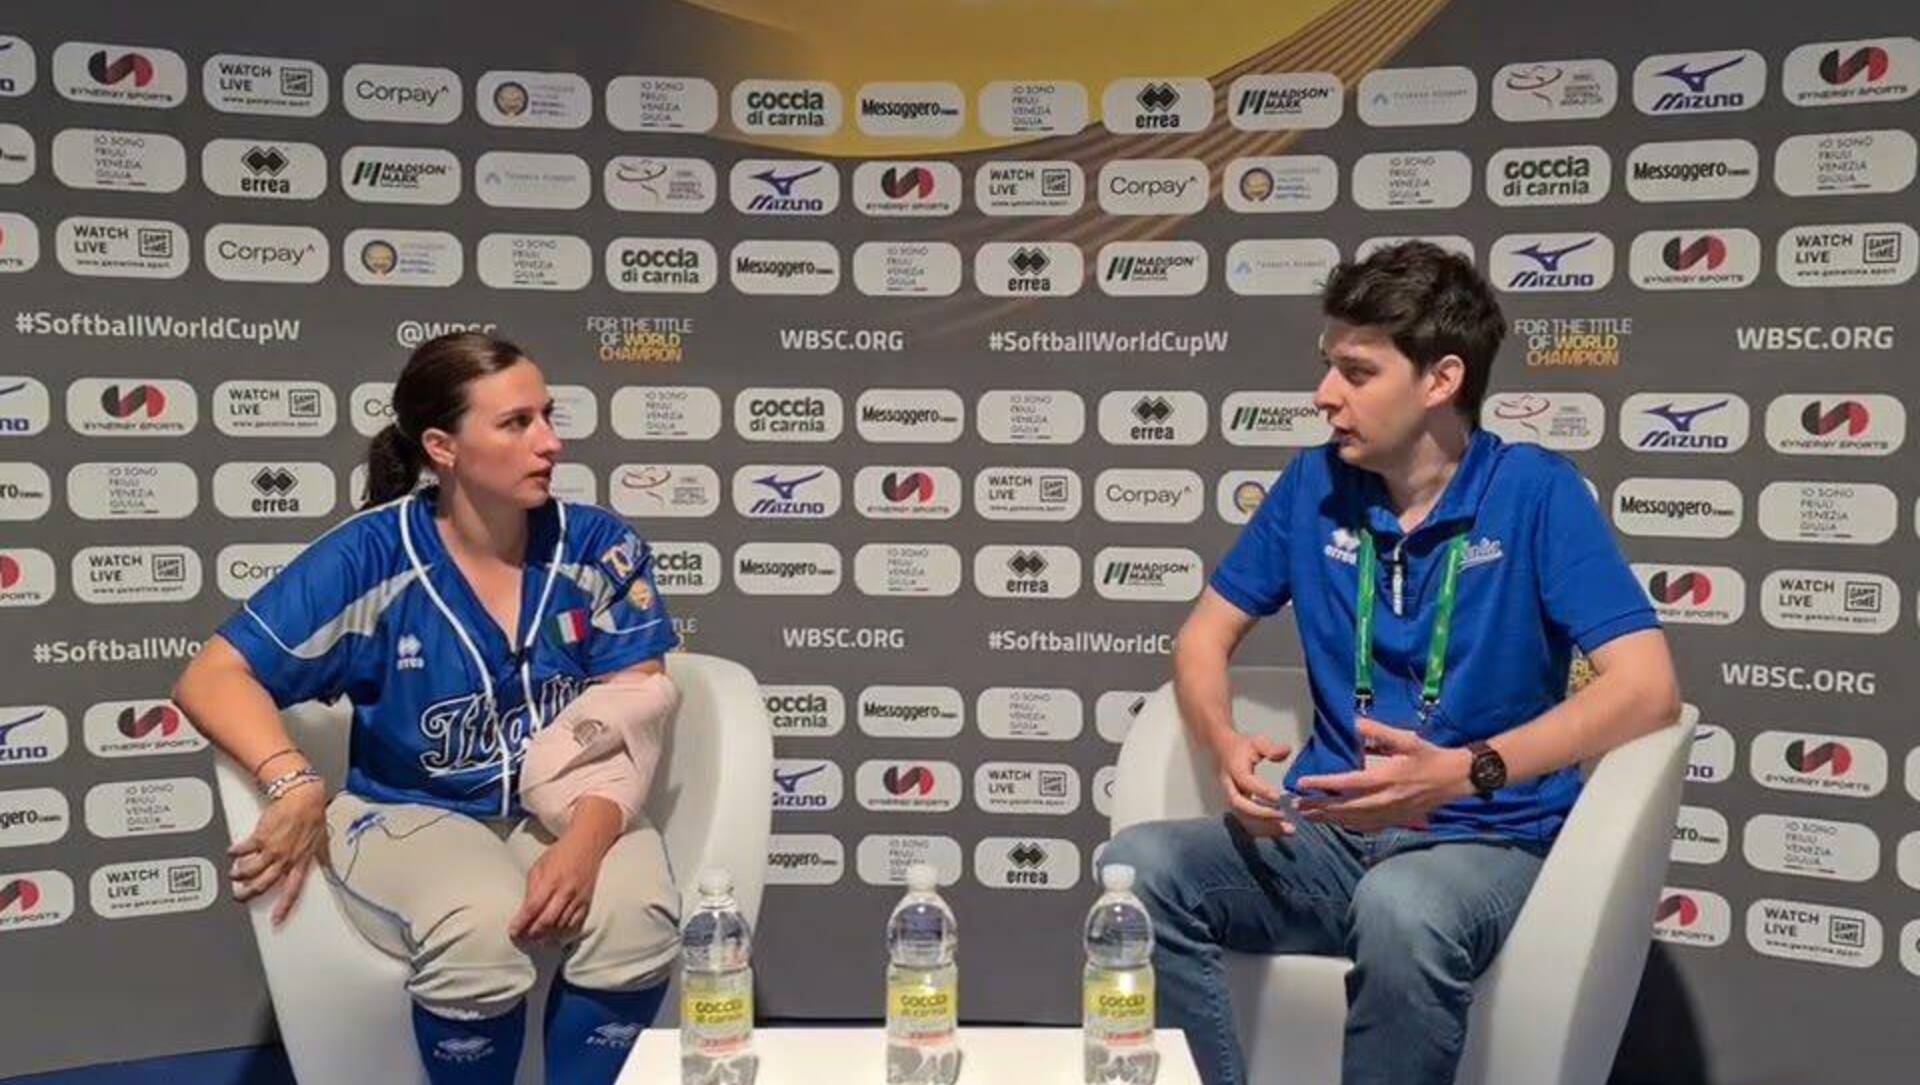 Mondiali softball, la saronnese Alice Nicolini mattatrice col Venezuela: “Anche noi fra le favorite”